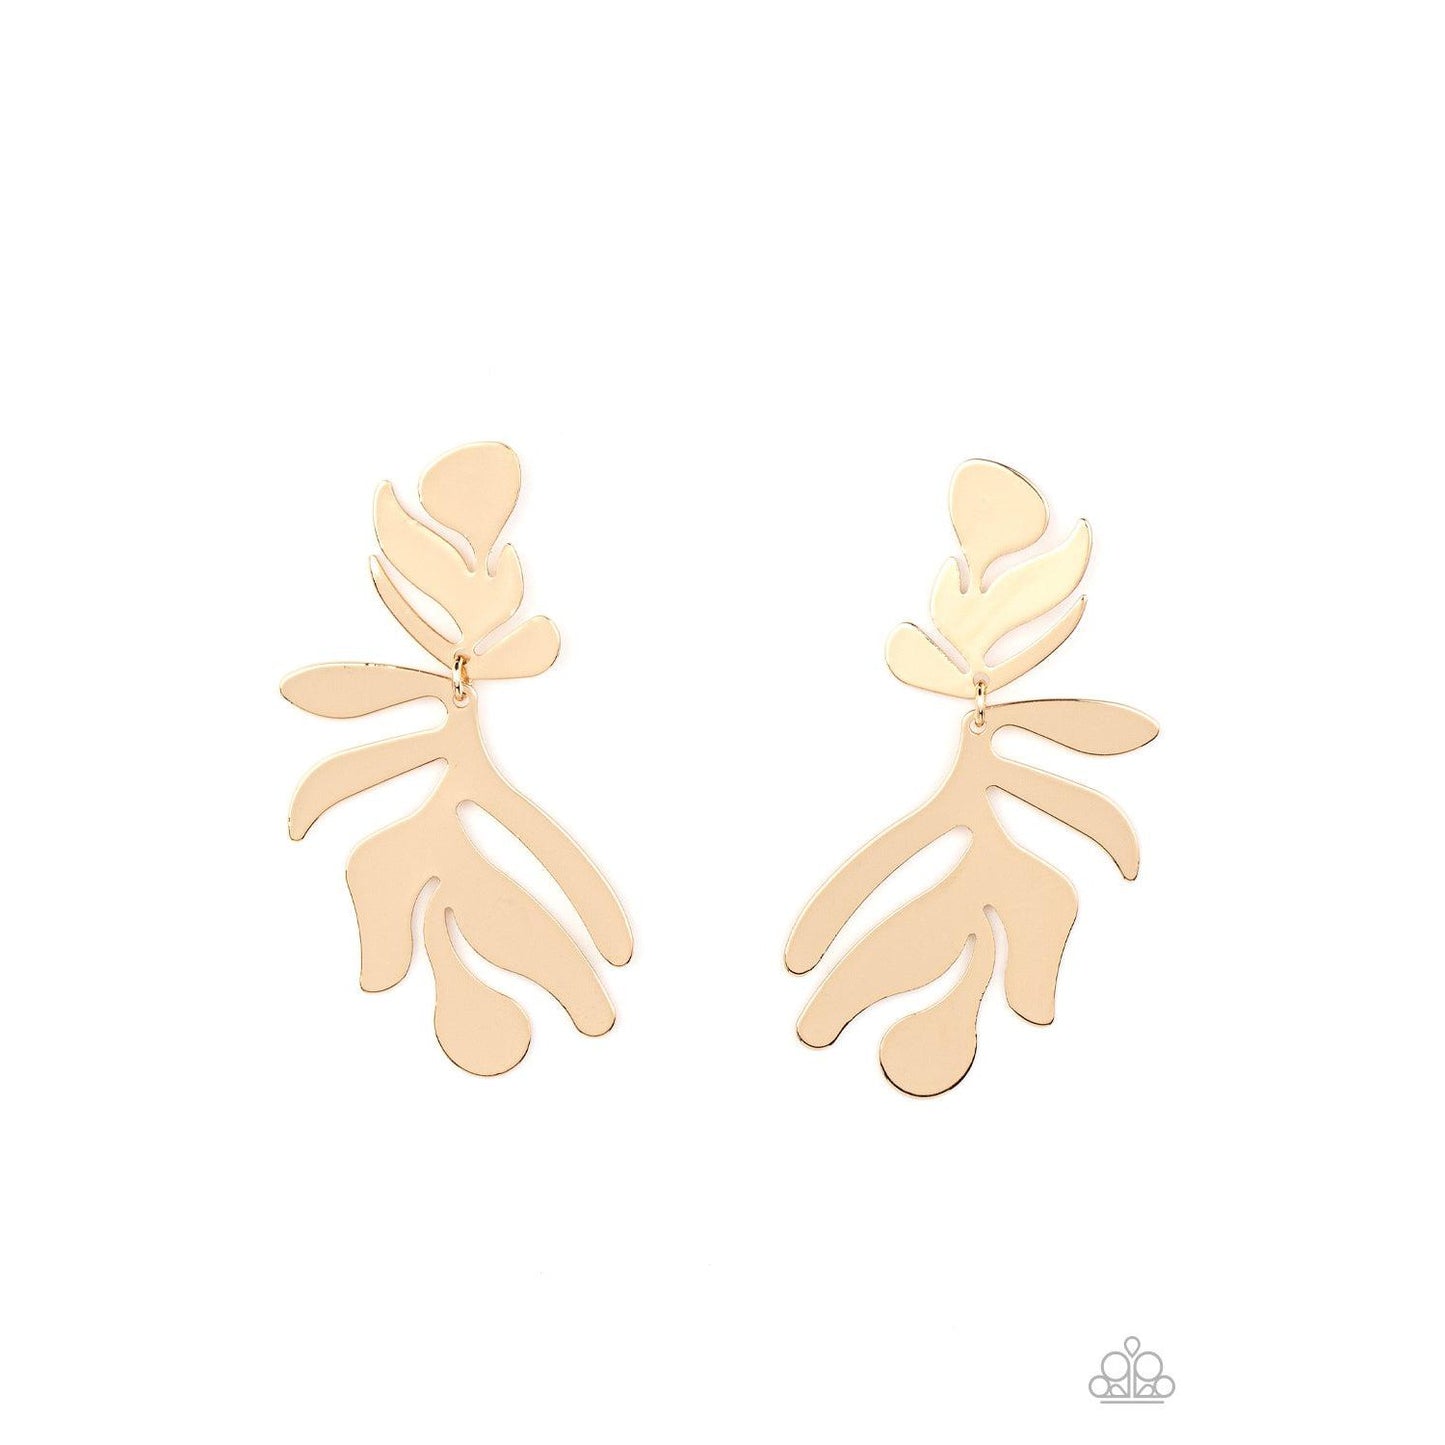 Palm Picnic - Gold Earrings - Bling by Danielle Baker